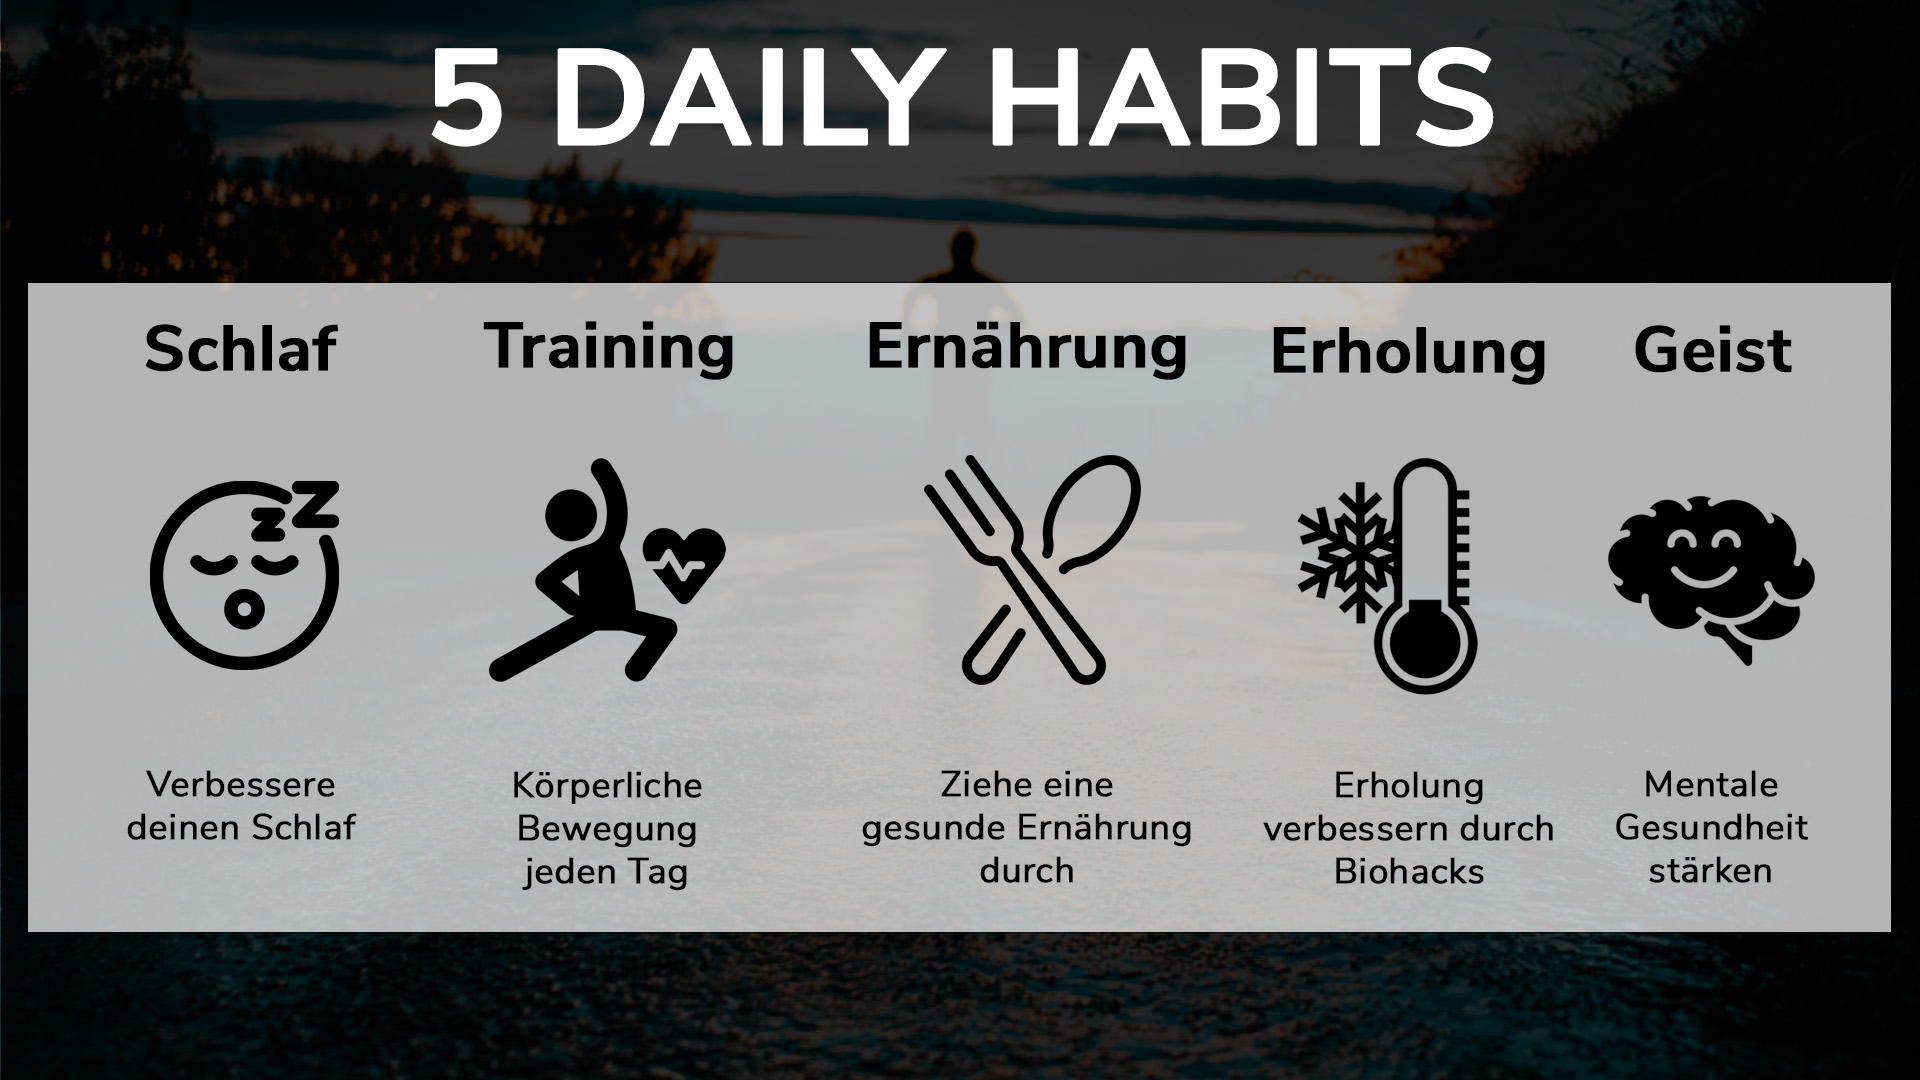 Daily Habits_2